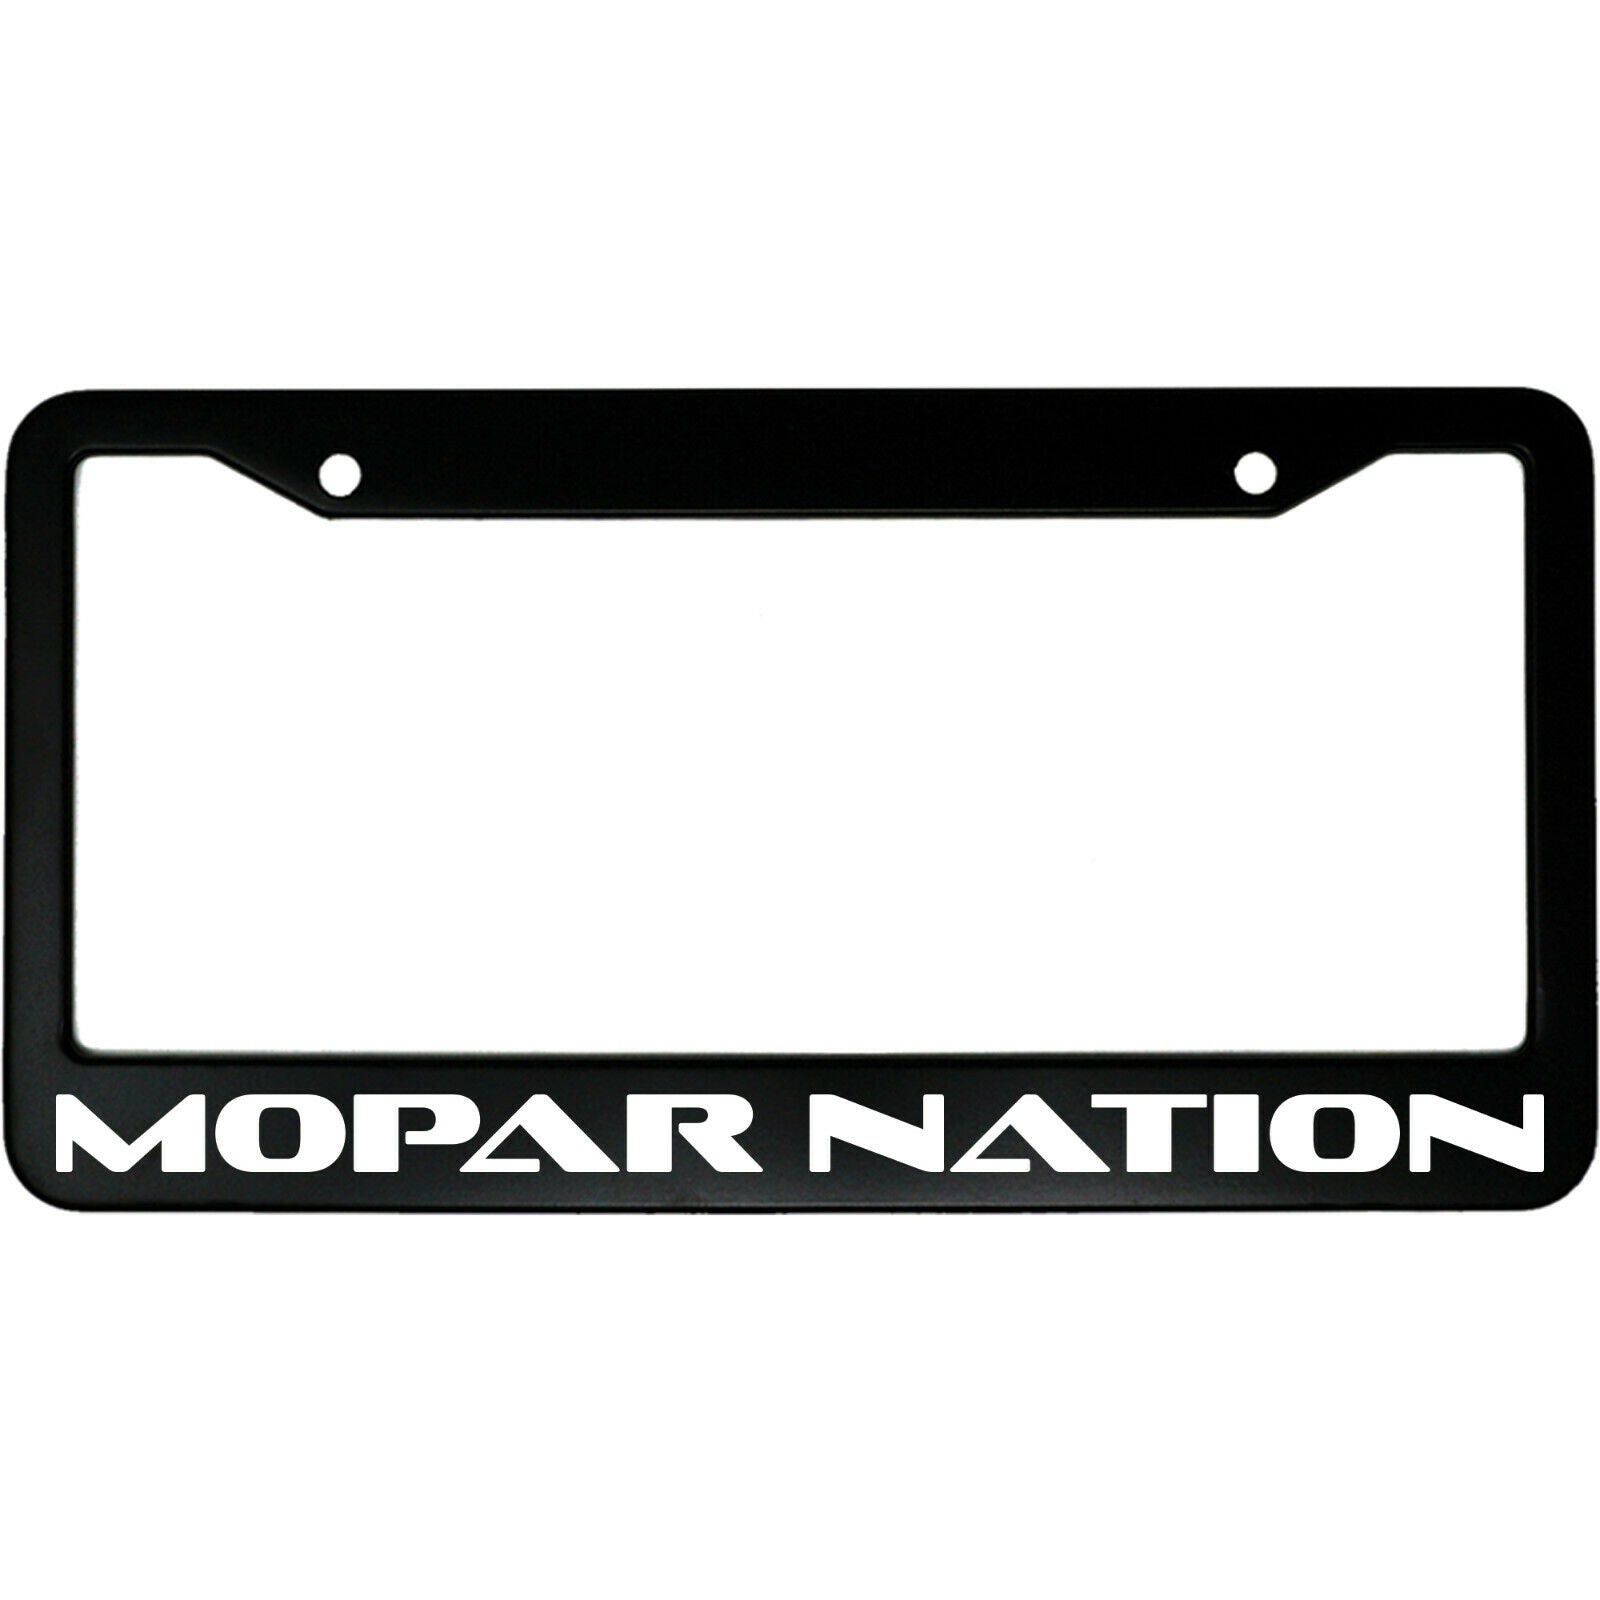 Mopar Nation